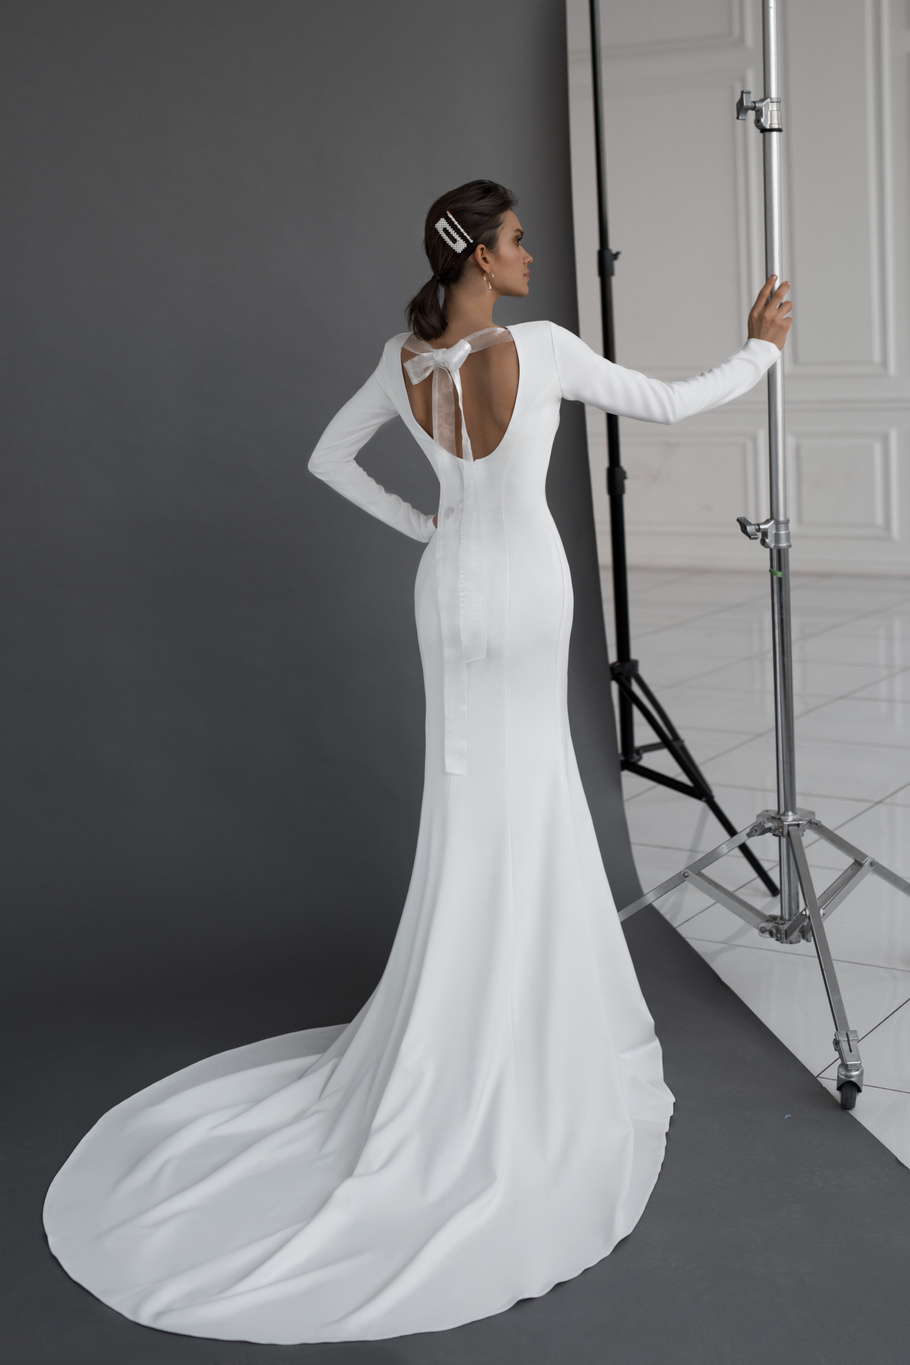 Свадебное платье «Инже» Марта — купить в Ярославле платье Инже из коллекции 2019 года